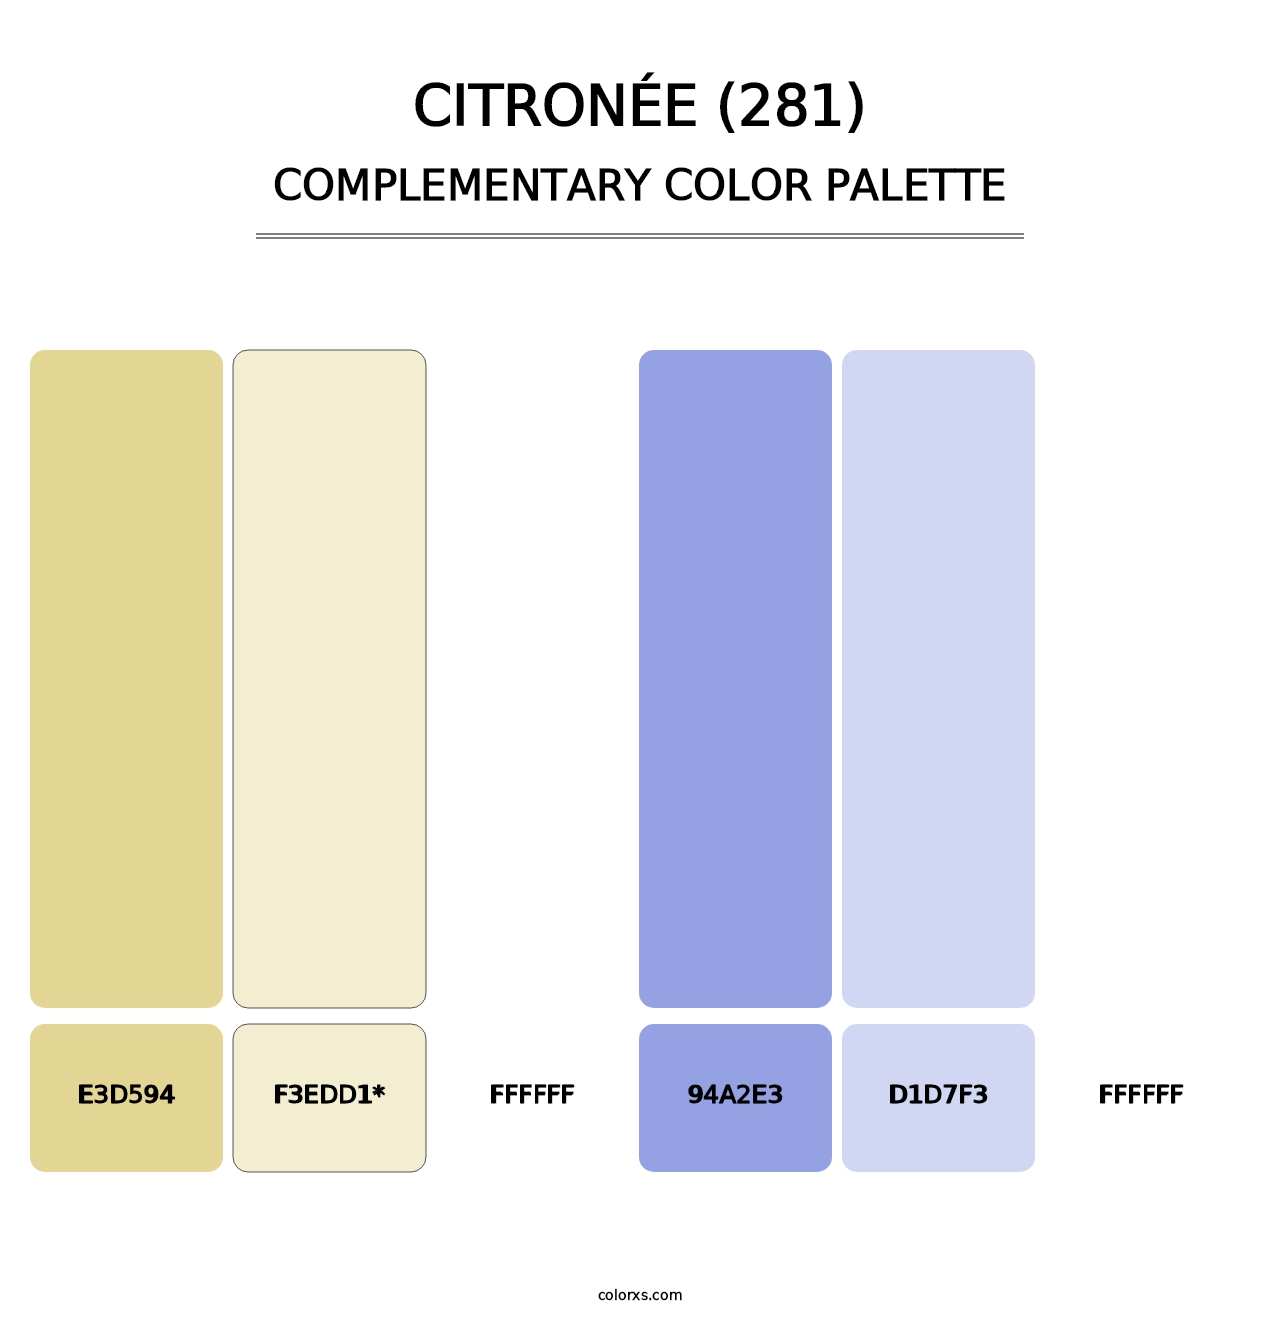 Citronée (281) - Complementary Color Palette